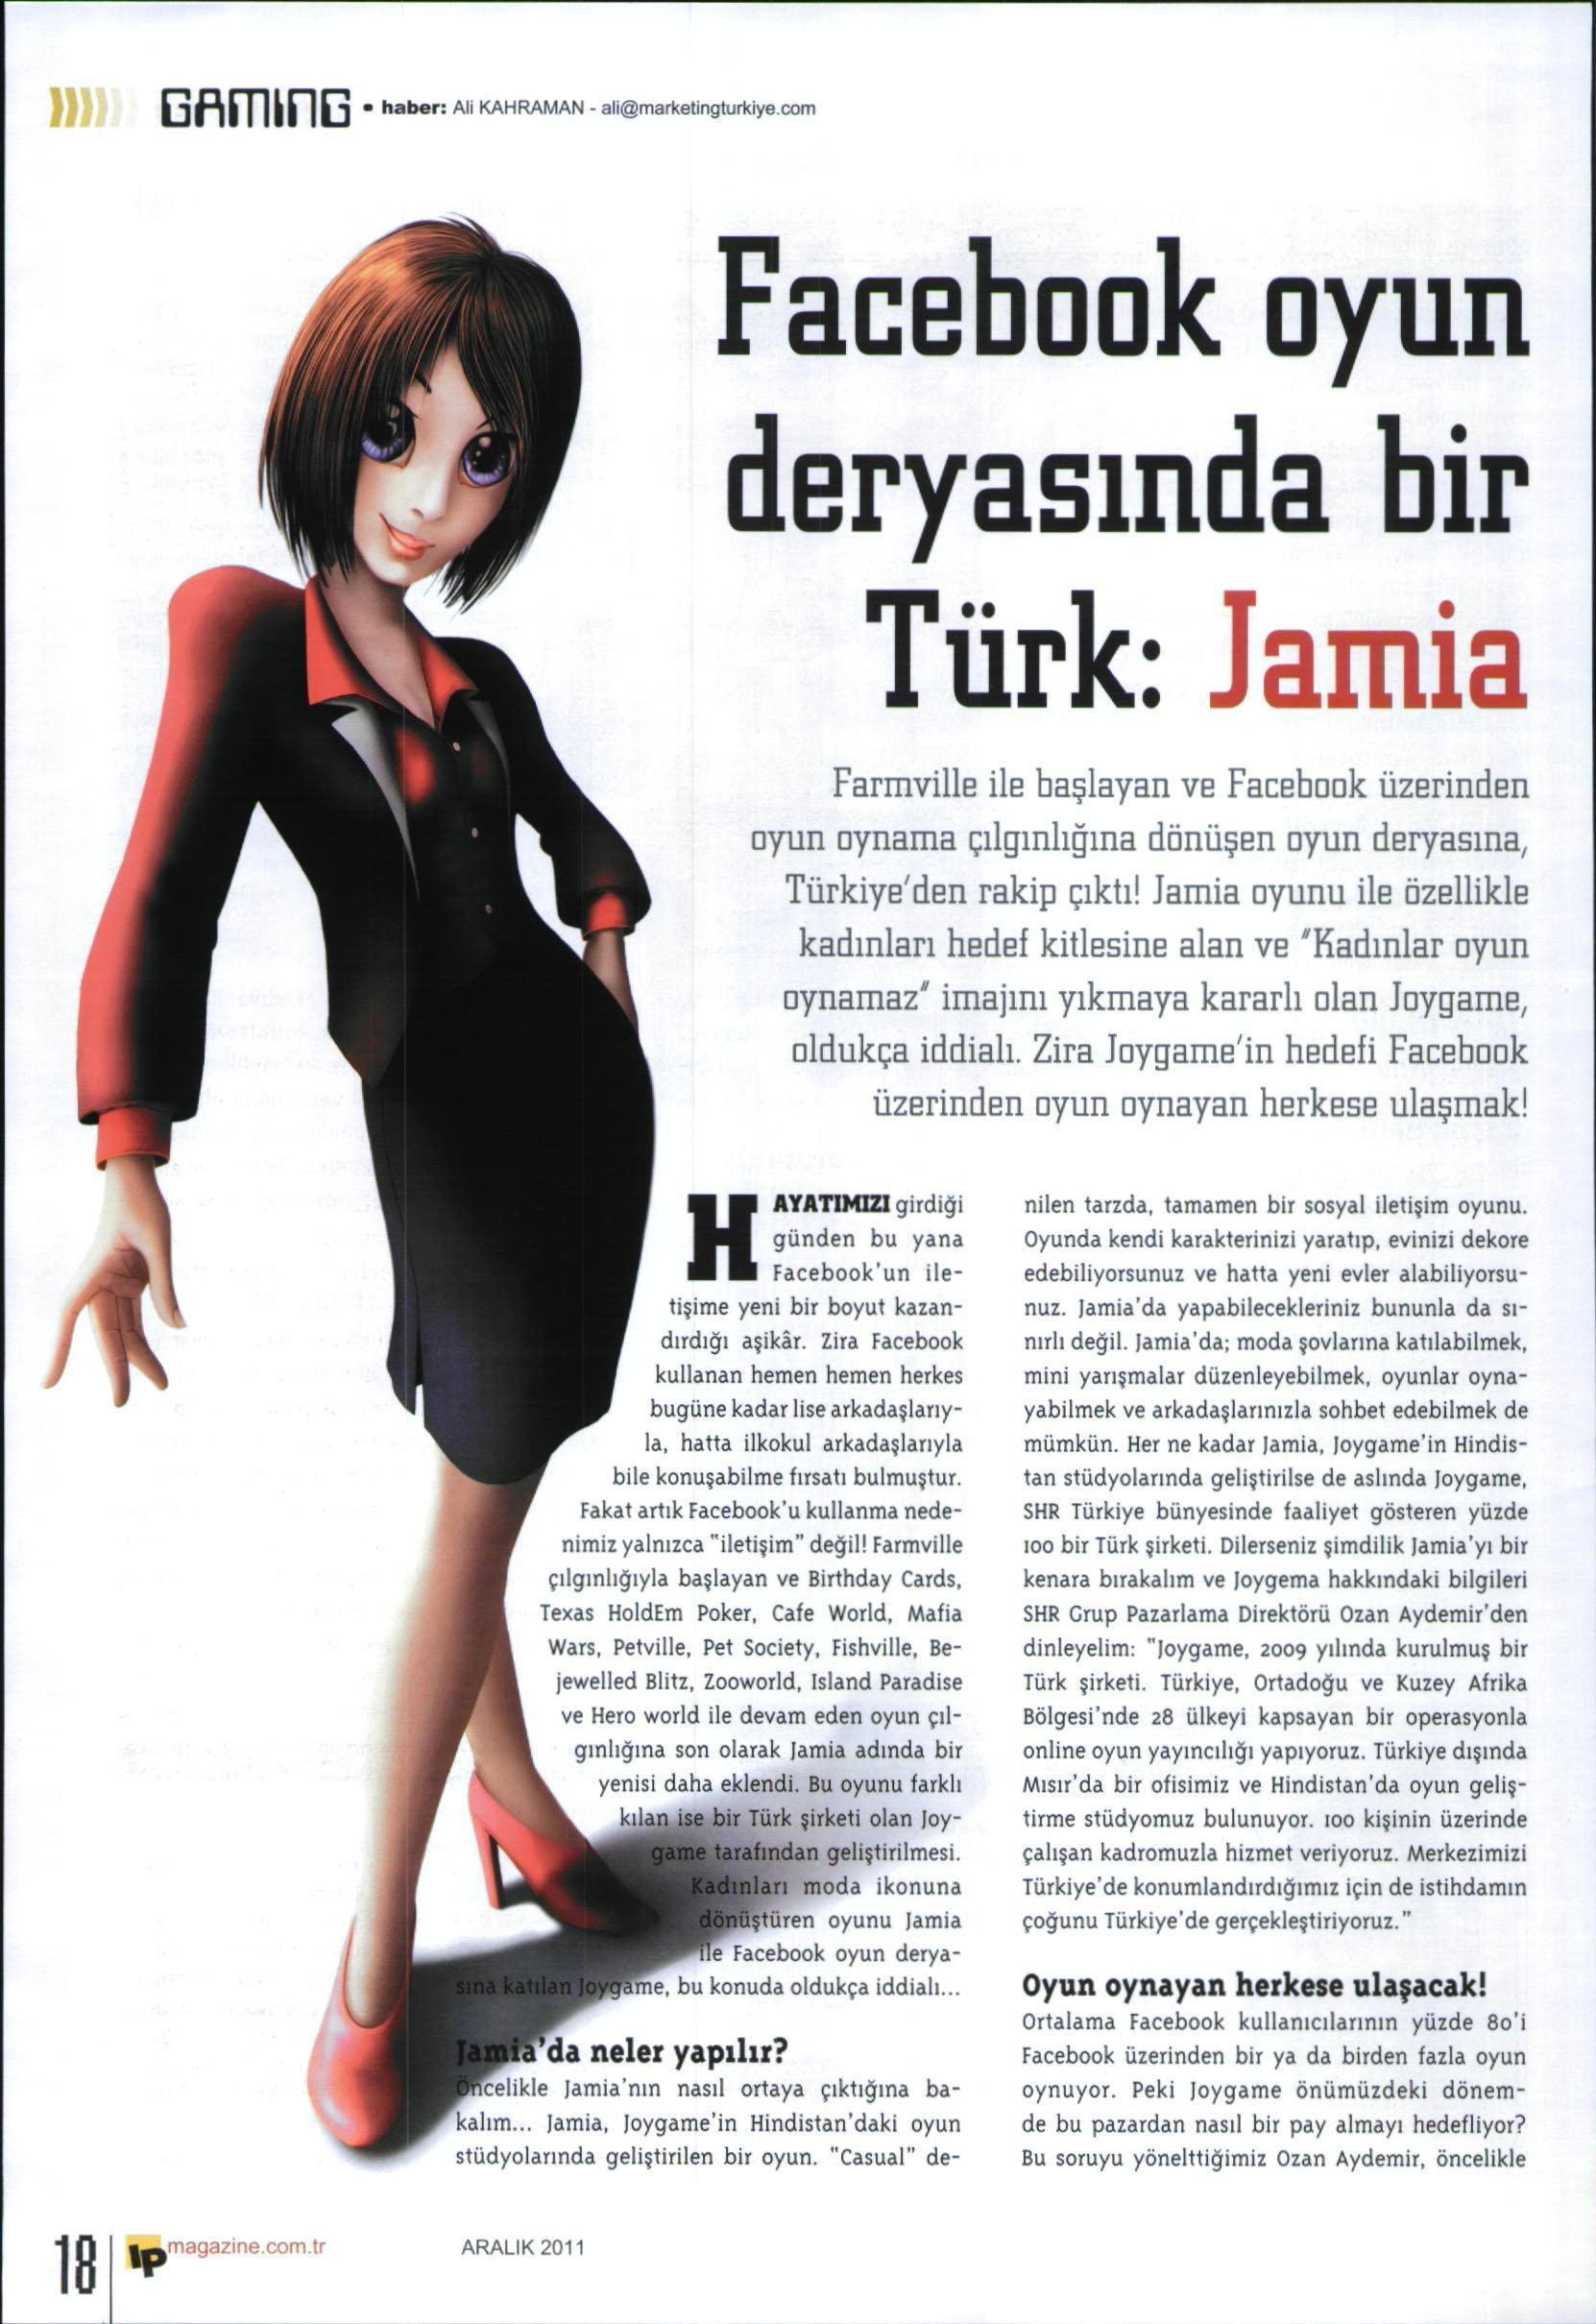 Netmarble-Turkey-Basin-Yansimasi-Marketing-Turkiye-15-Aralik-2011-1